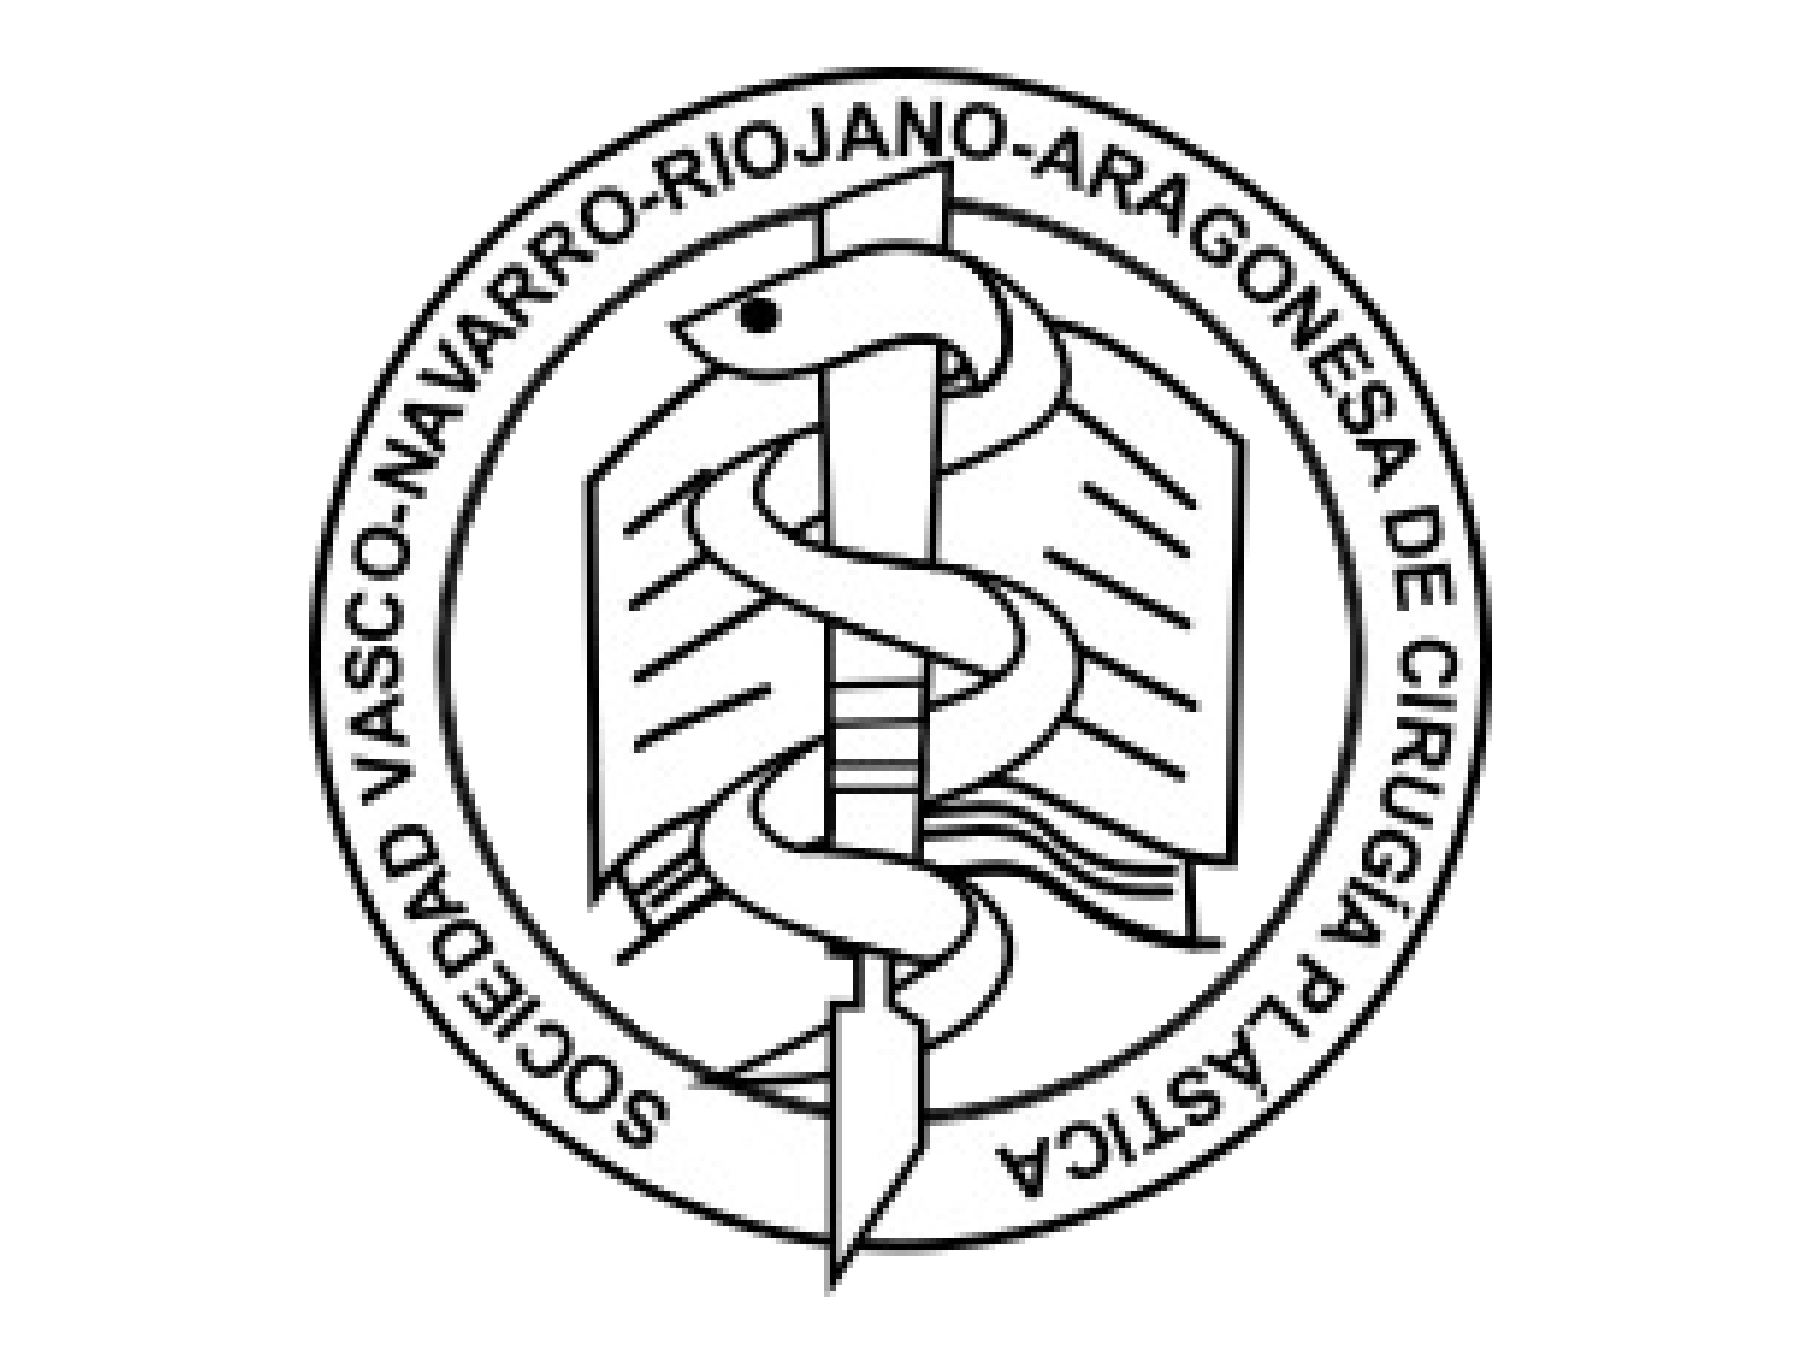 Icono y logotipo con fondo transparente de la sociedad vasco-navarro-riojano-aragonesa de cirugía plástica.